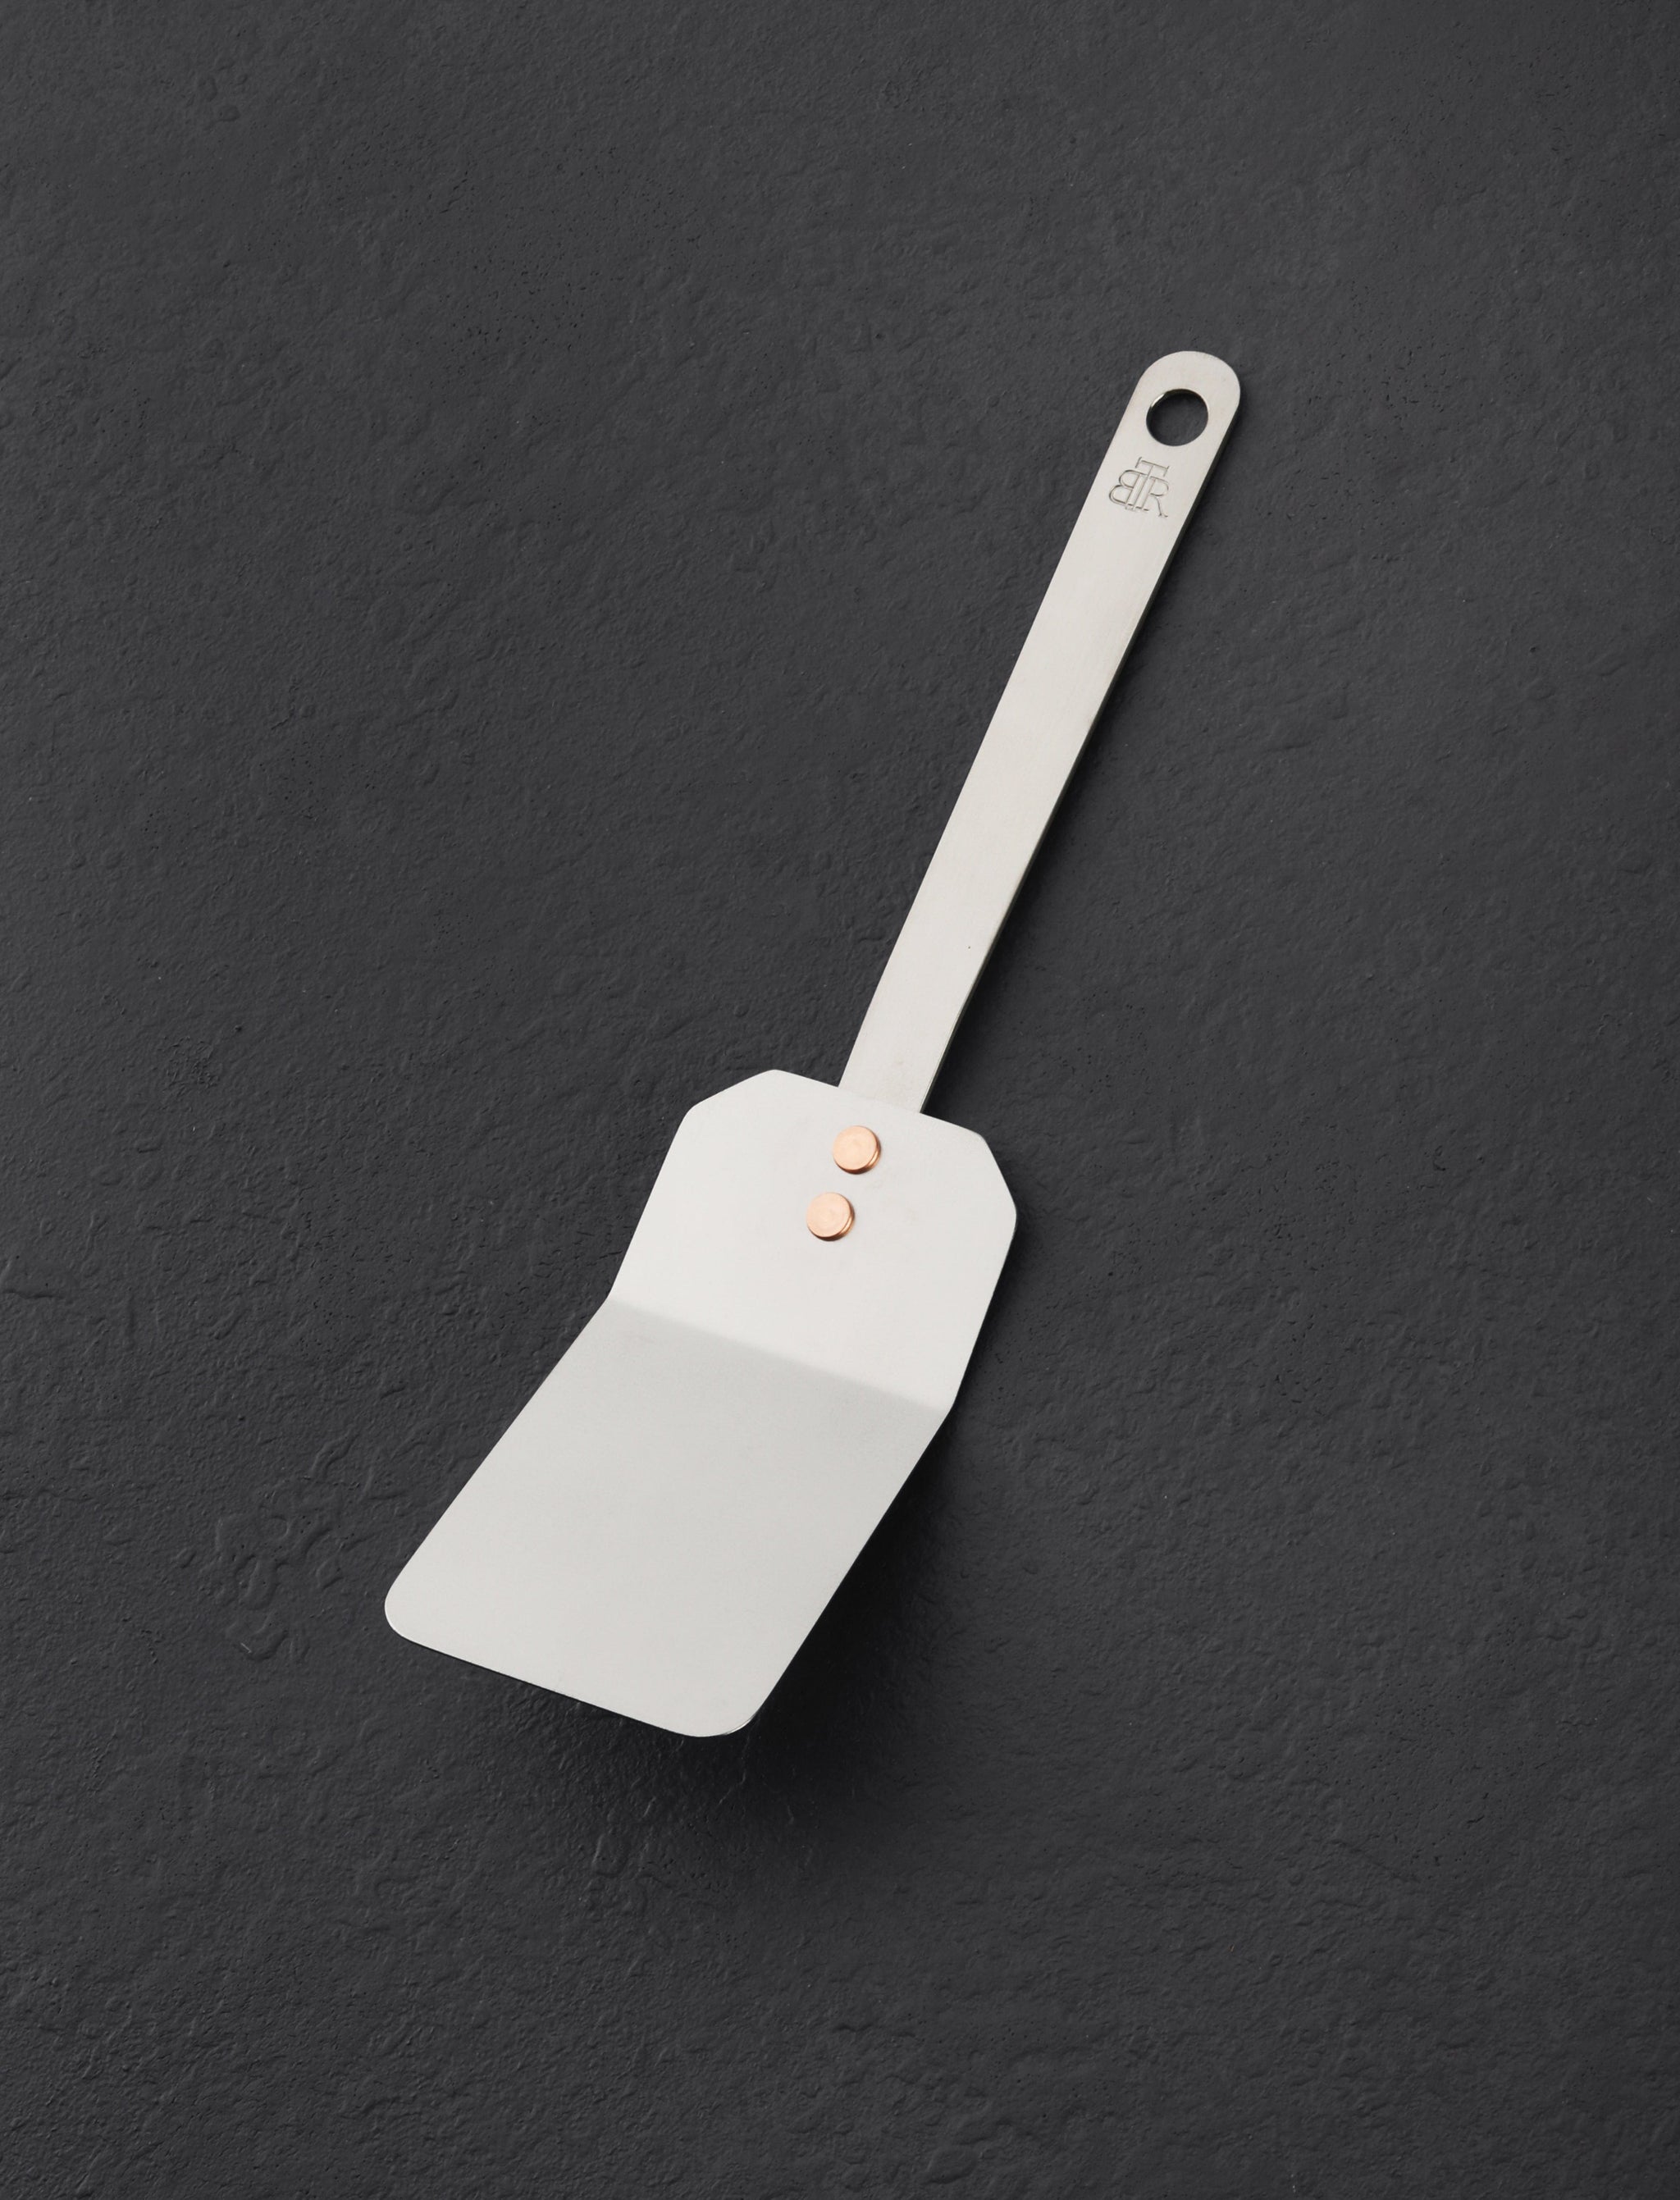 https://eatingtools.com/cdn/shop/files/spatulas-ben-tendick-oregon-tispats-mini-titanium-spatula-43020338757907.jpg?v=1693334171&width=2048